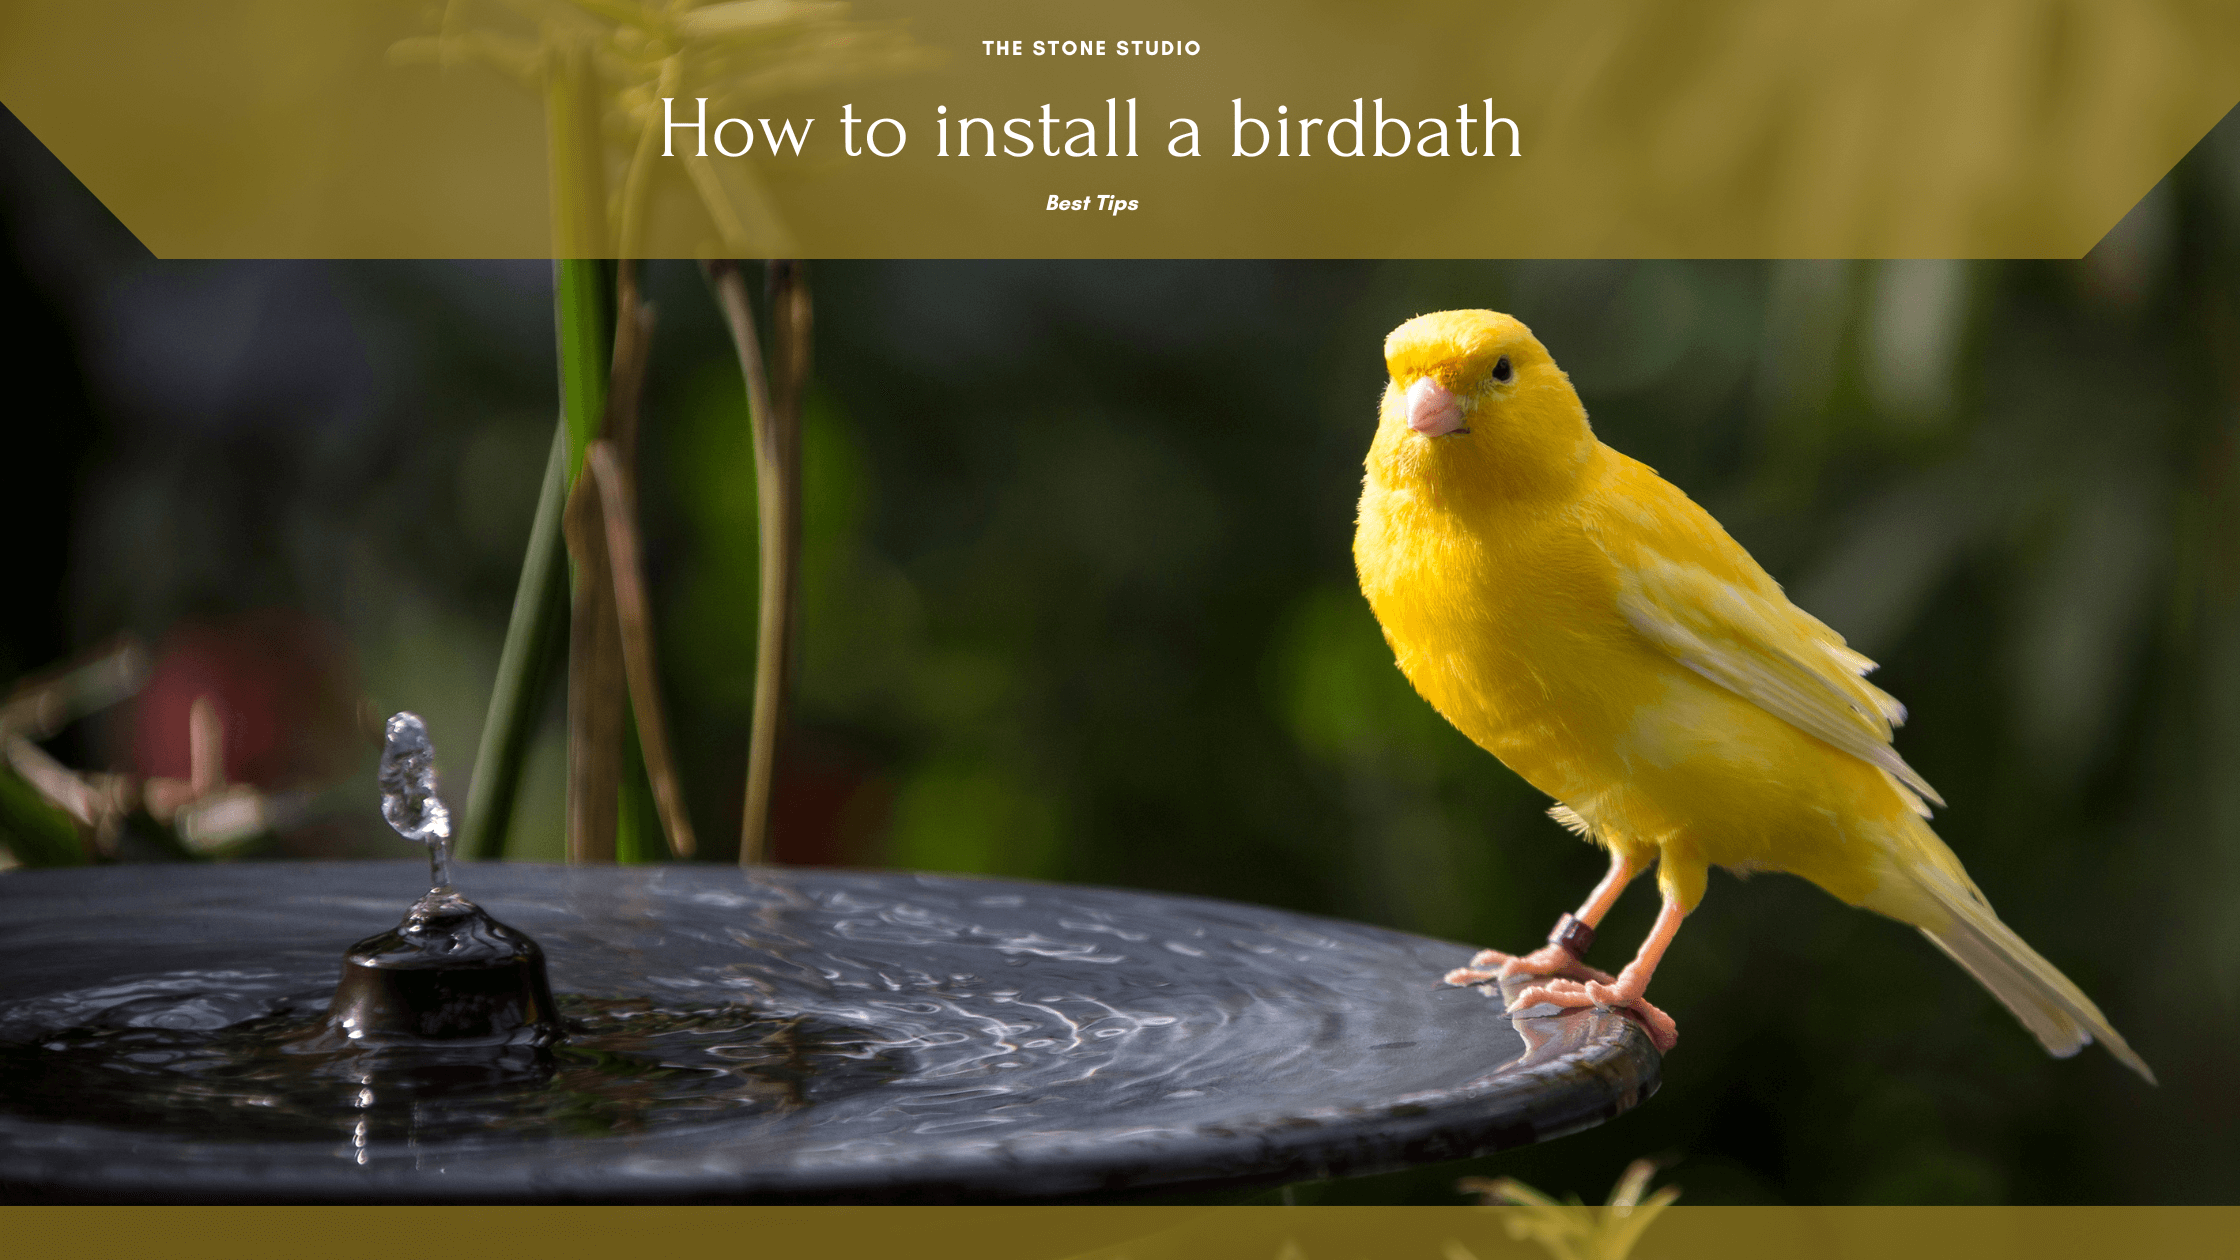 How to install a bird bath